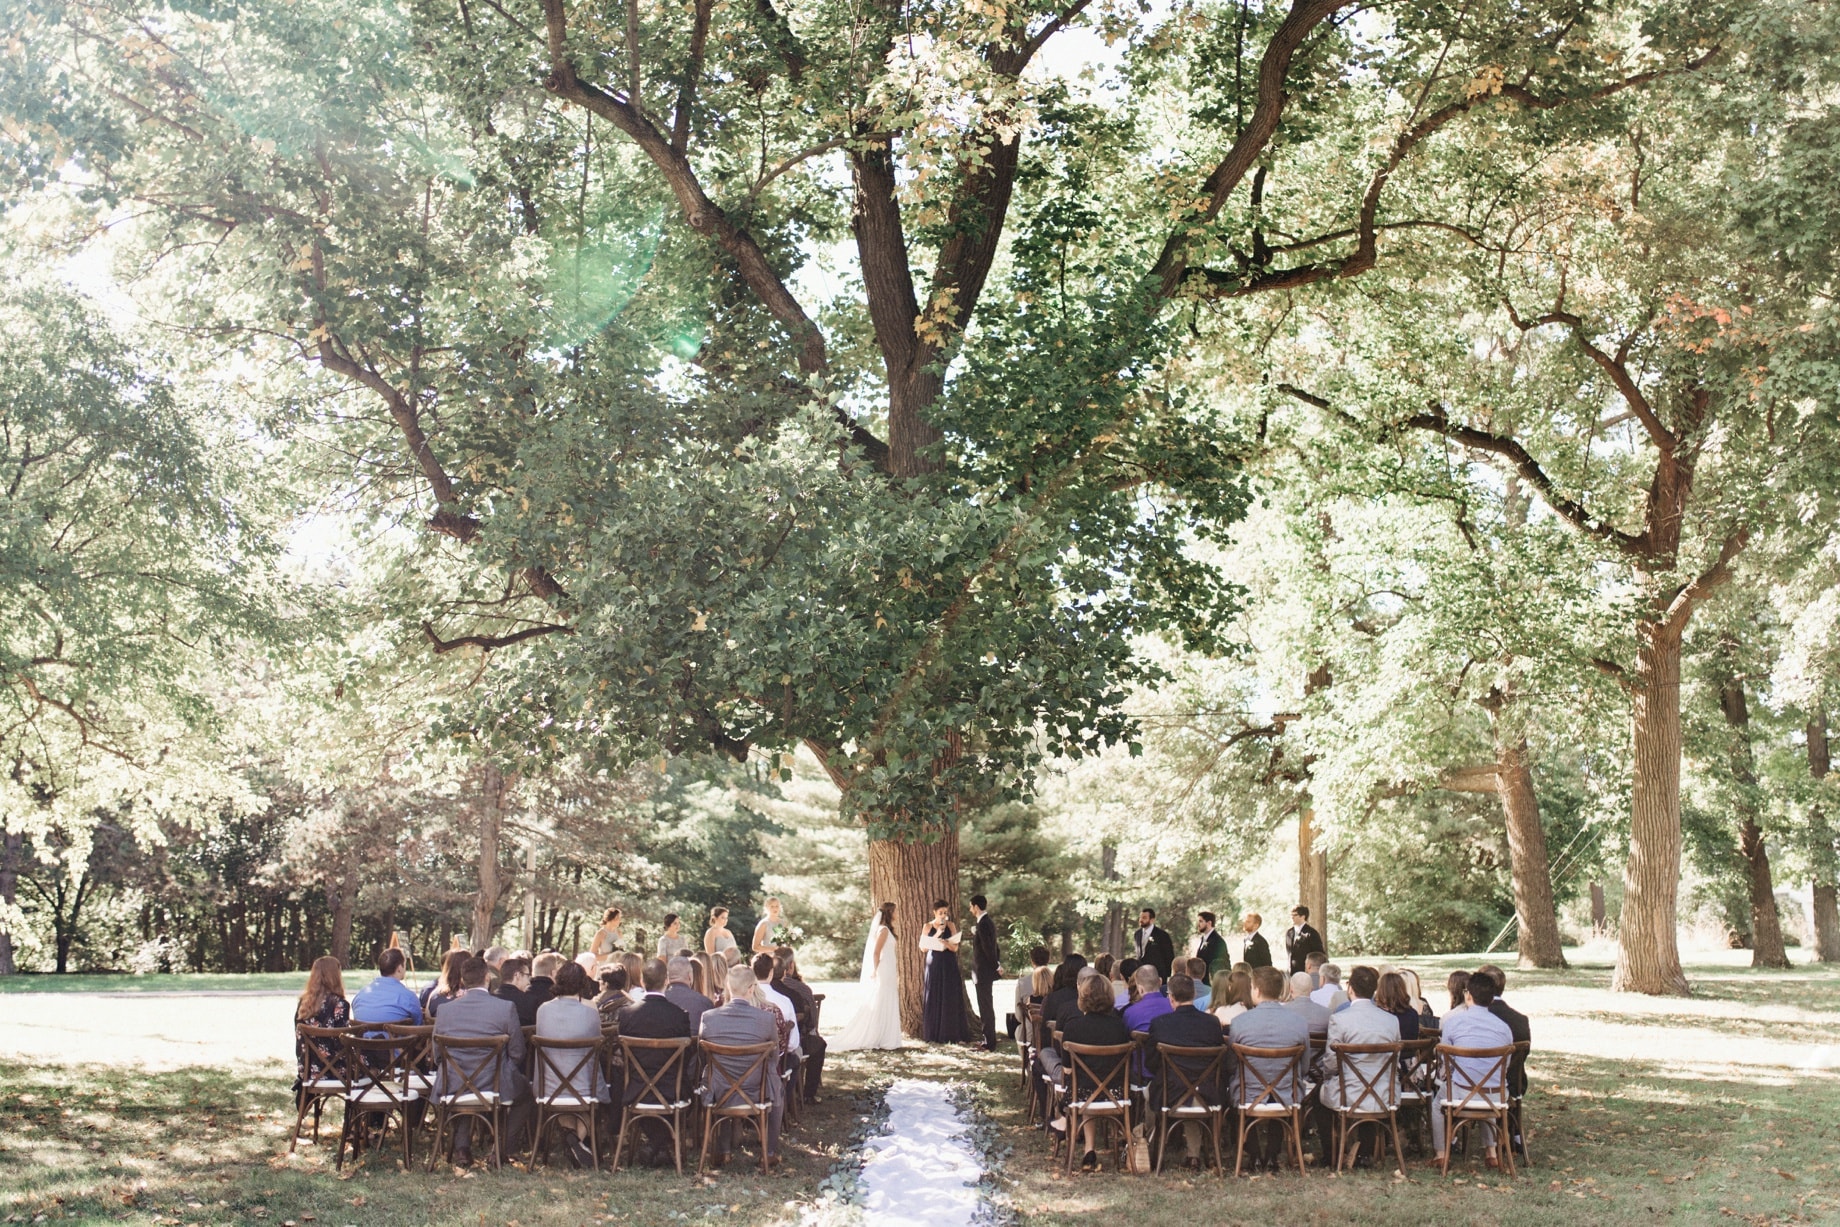 outdoor wedding ceremony underneath a tree